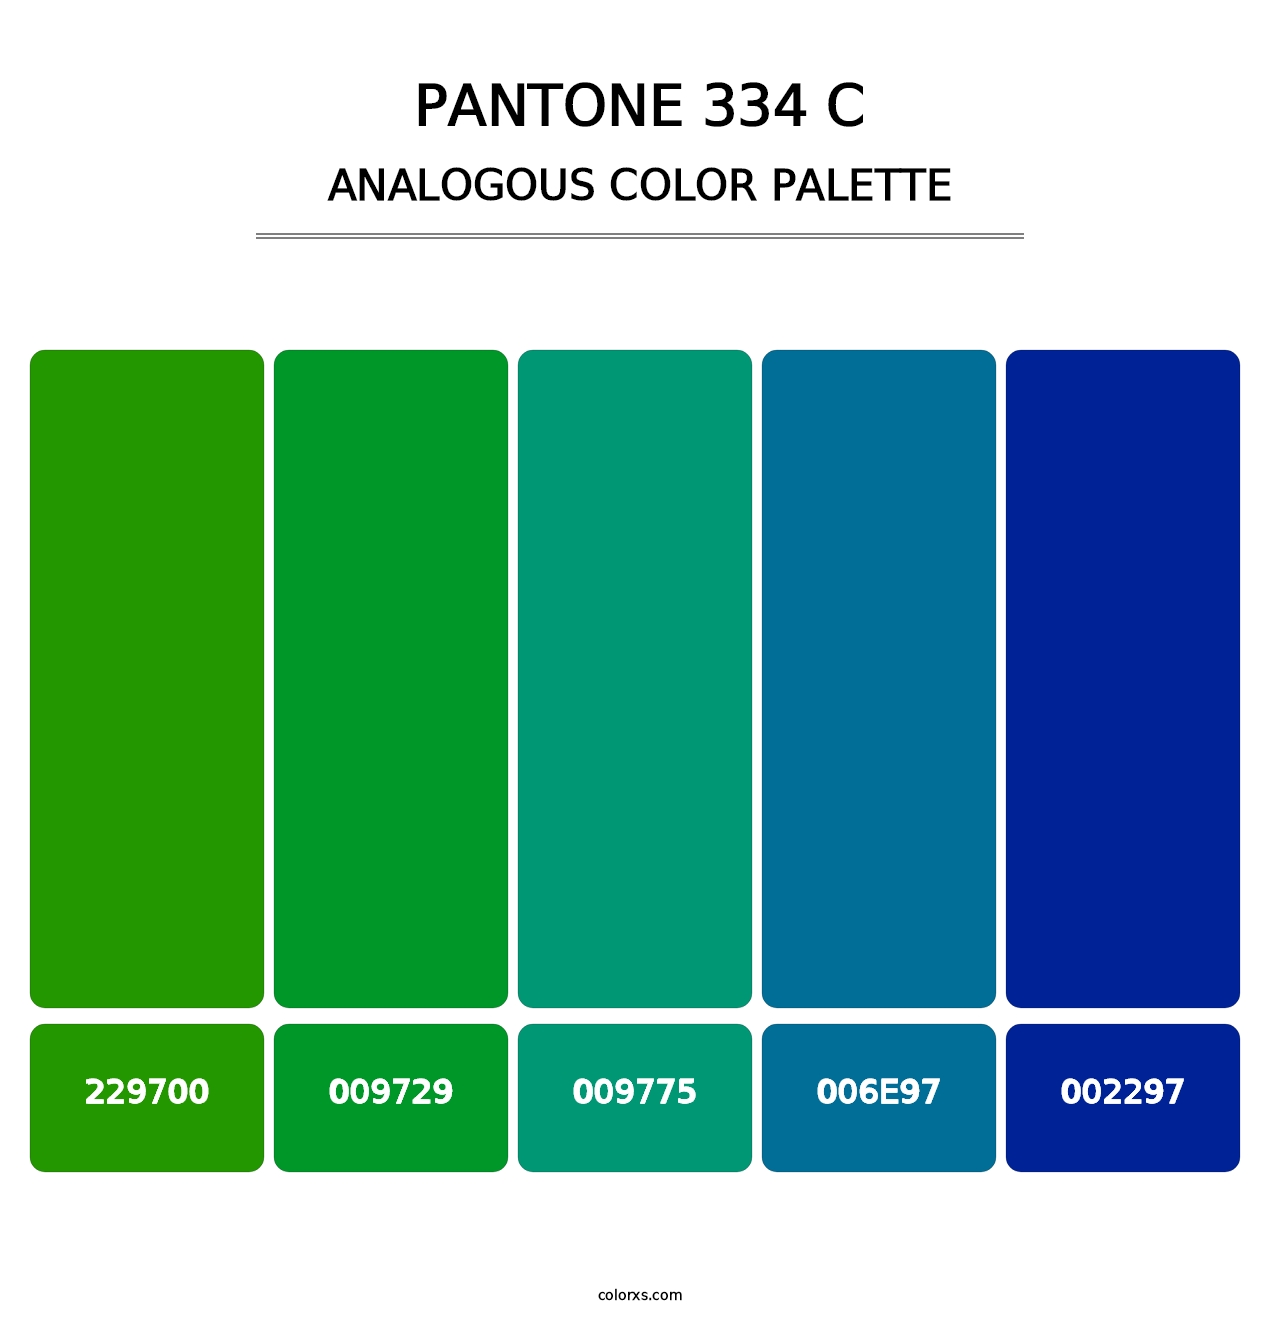 PANTONE 334 C - Analogous Color Palette